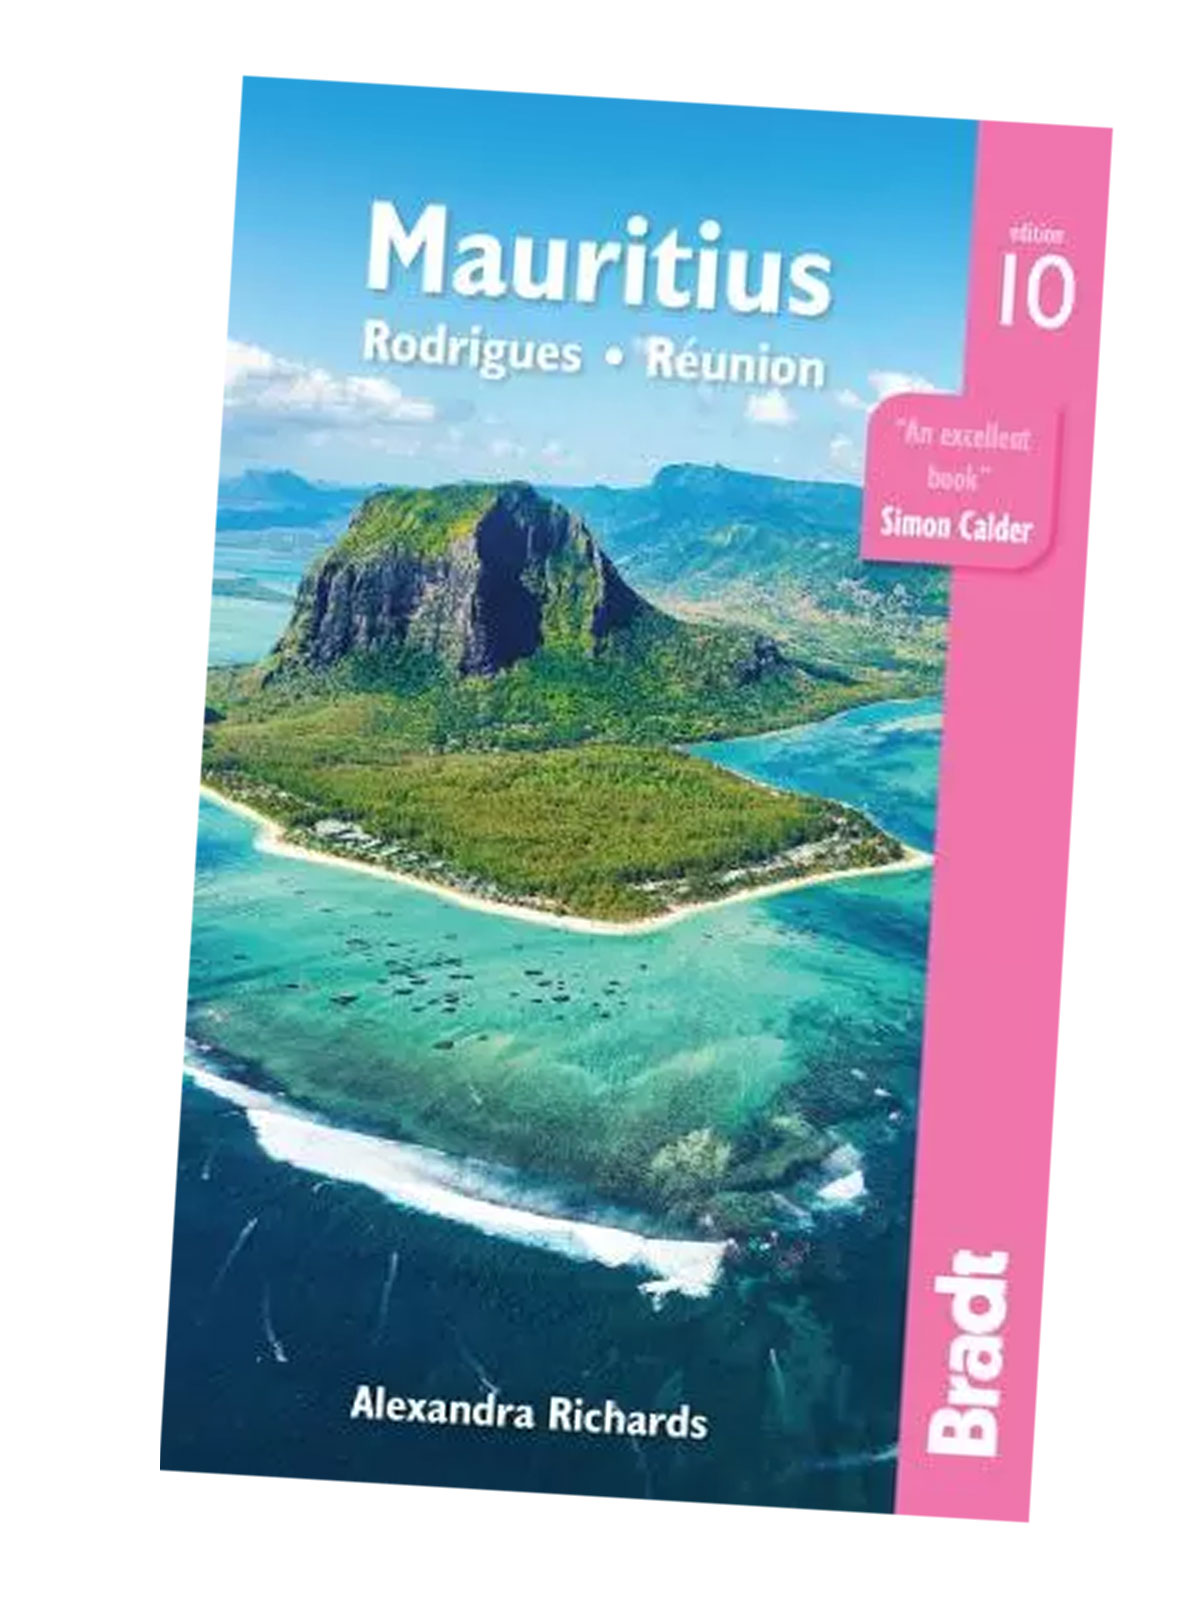 Mauritius reiseguide